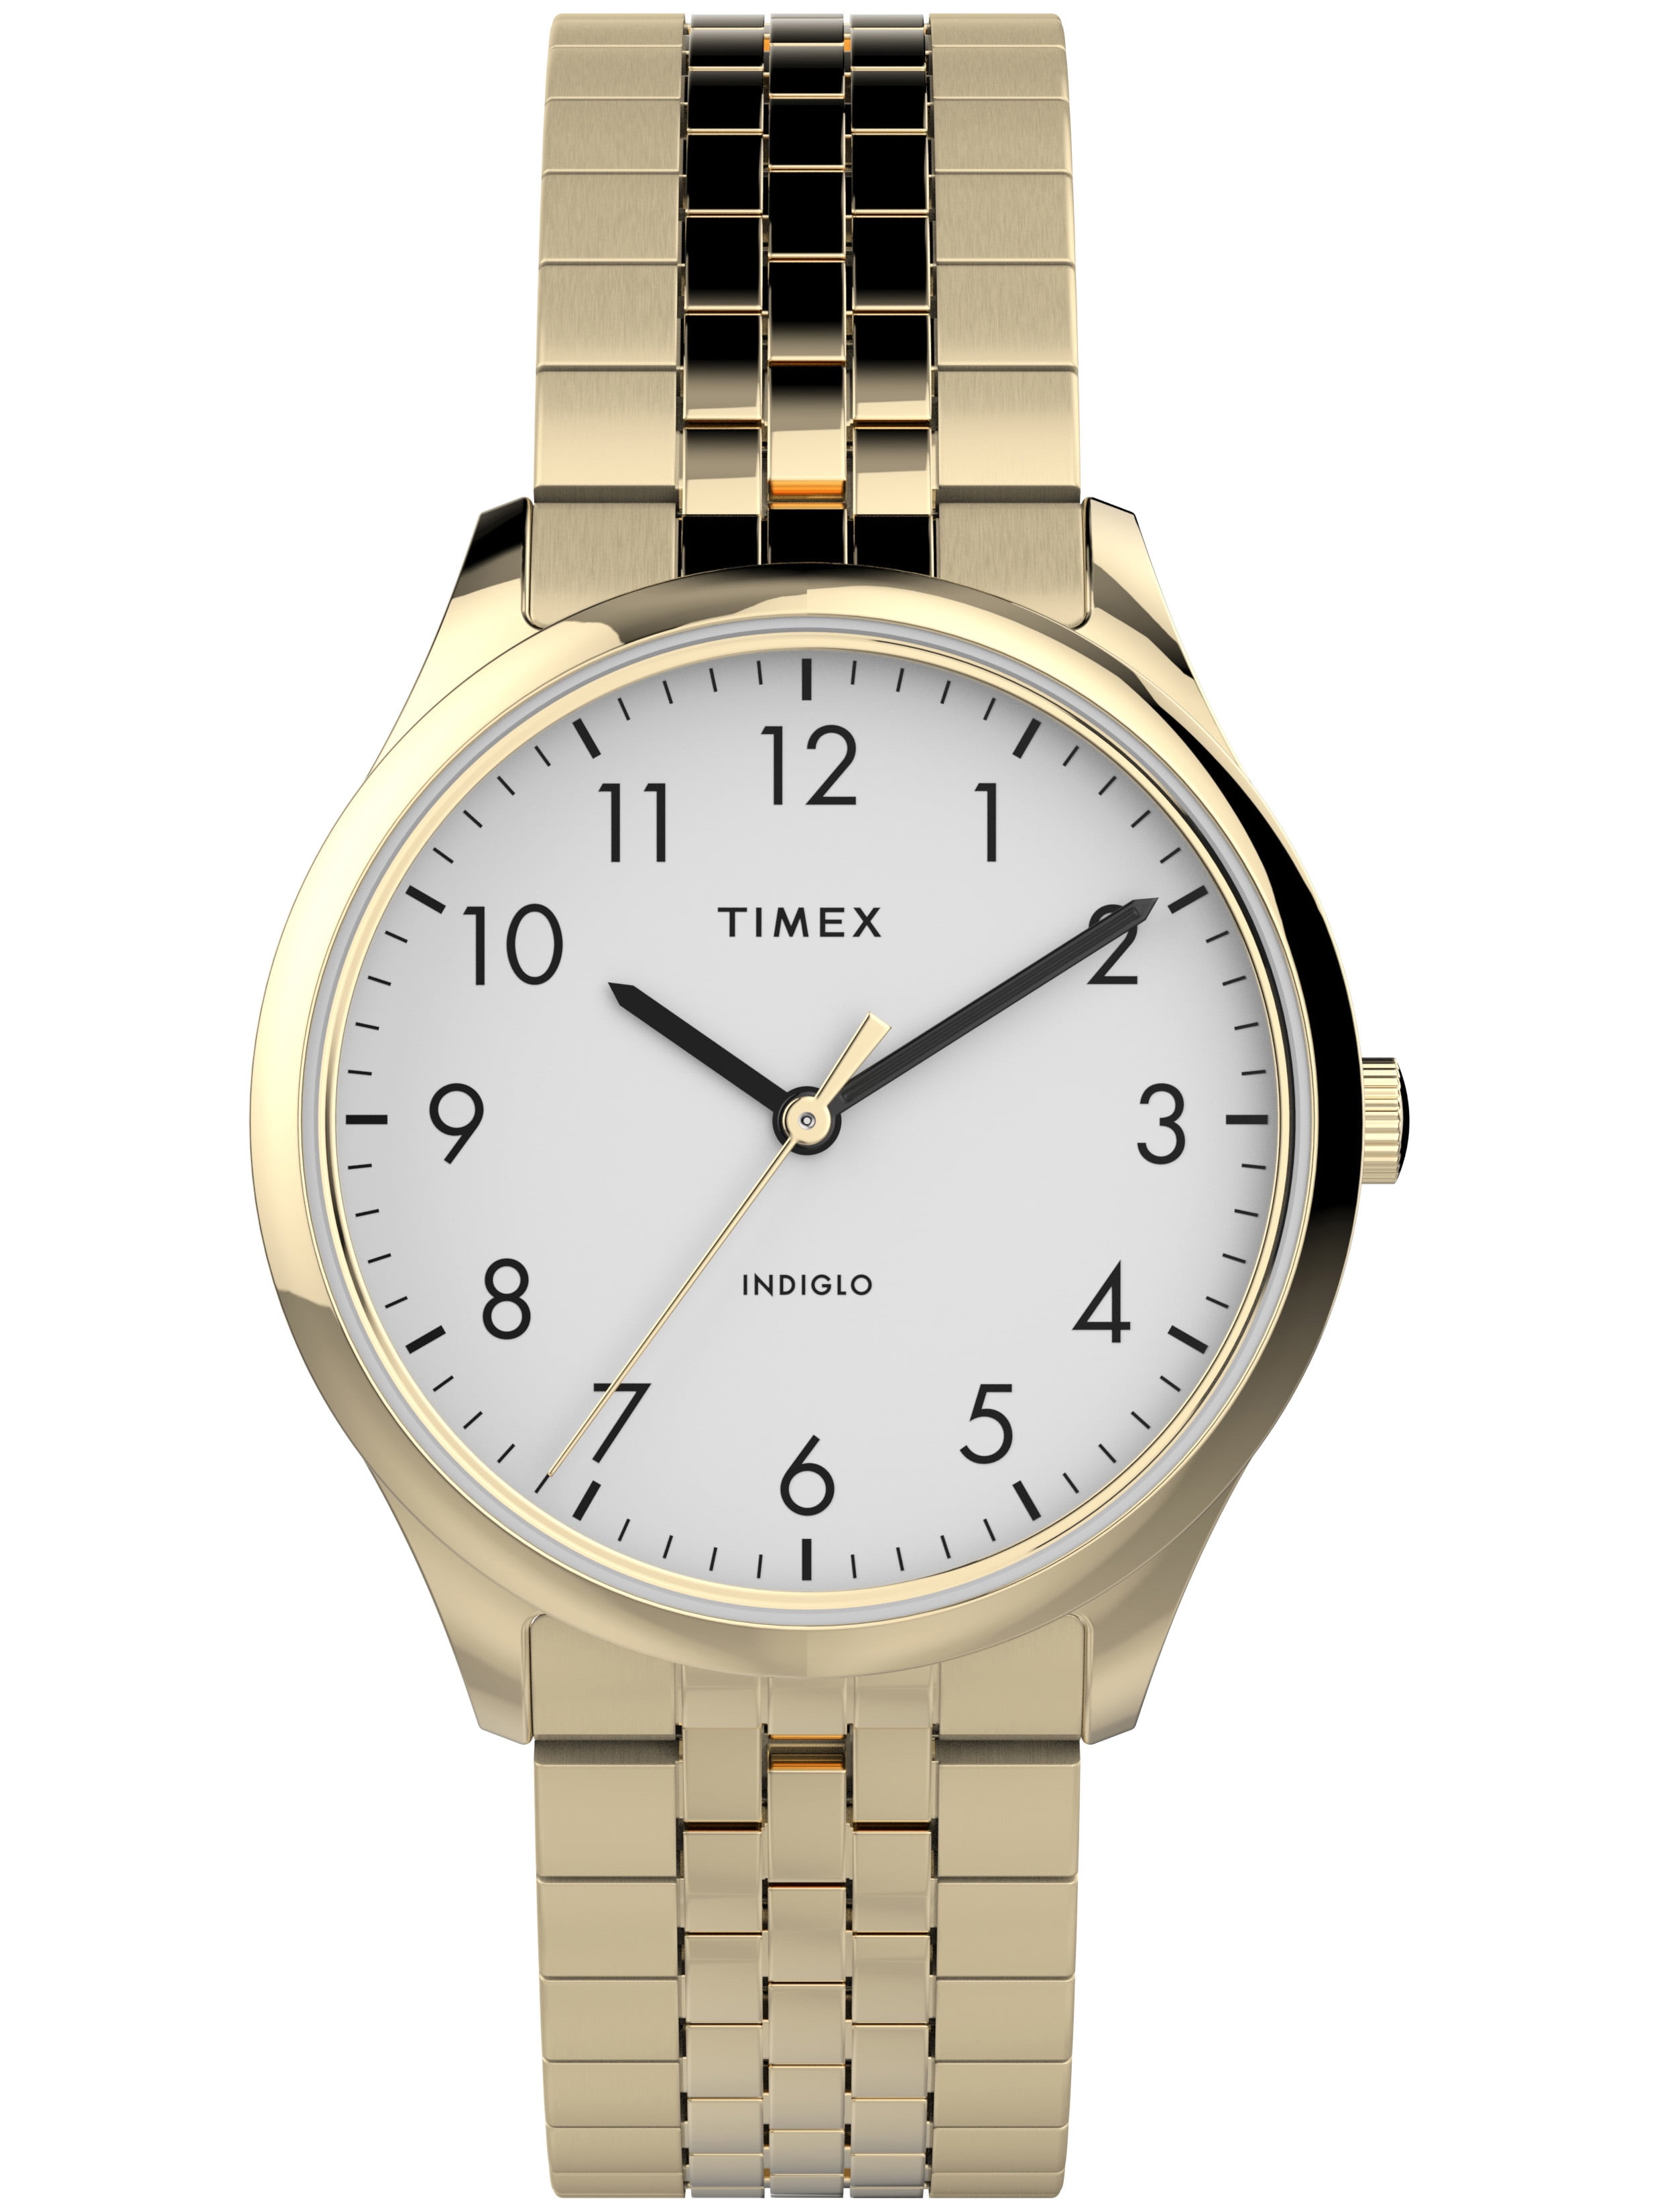 Timex Girls Digital Watch